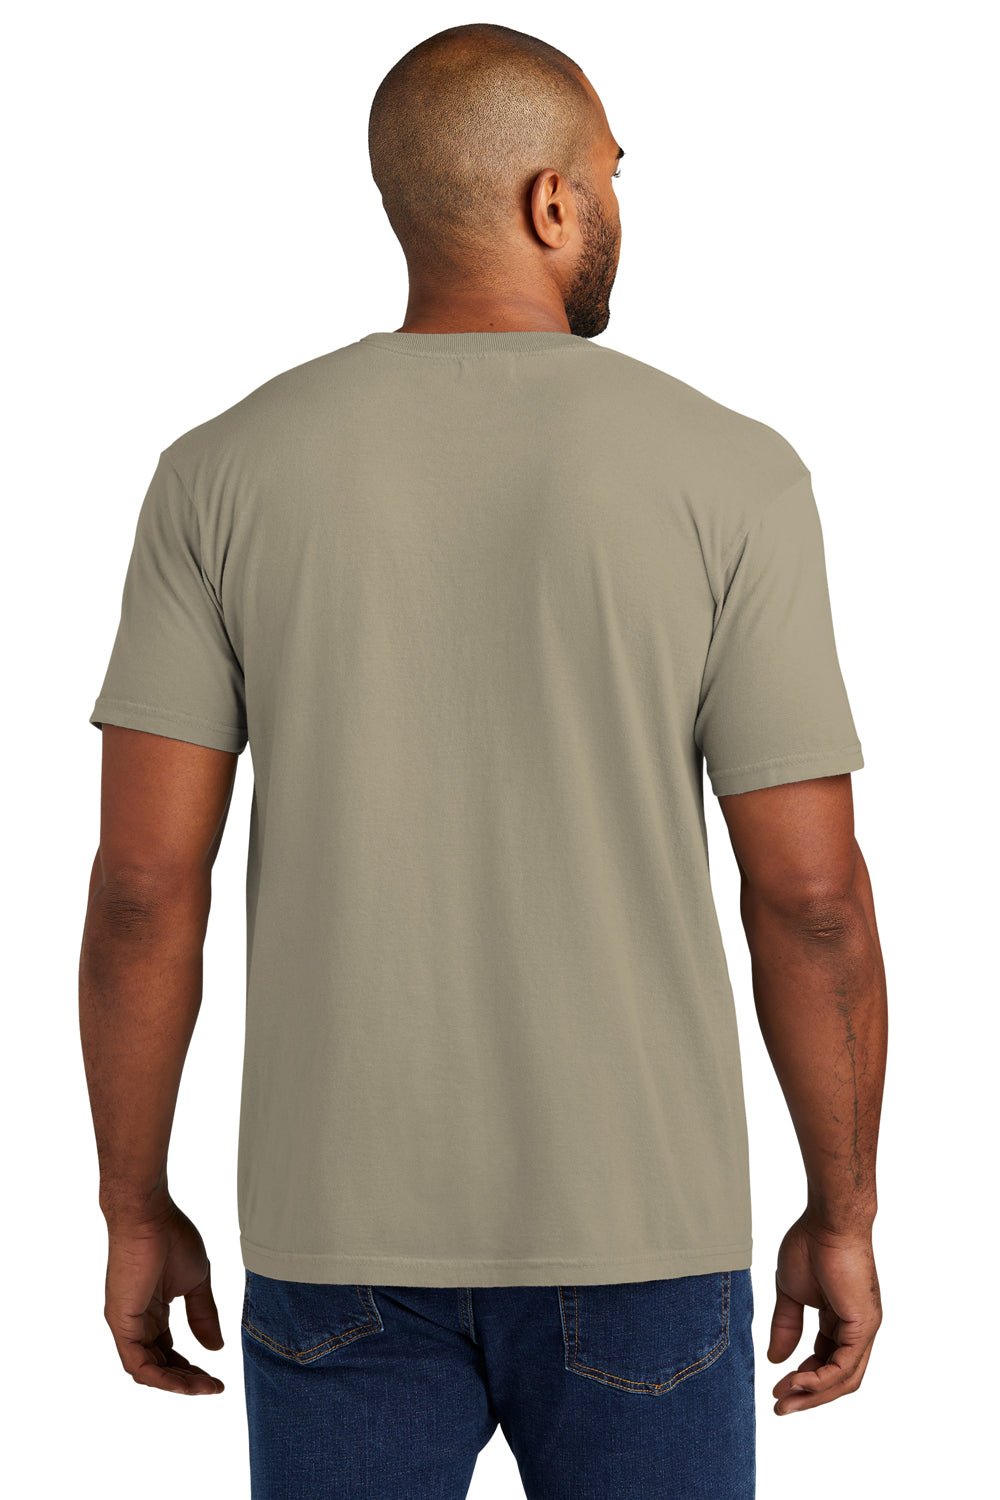 Comfort Colors Mens Short Sleeve Crewneck T-Shirt w/ Pocket Sandstone Back